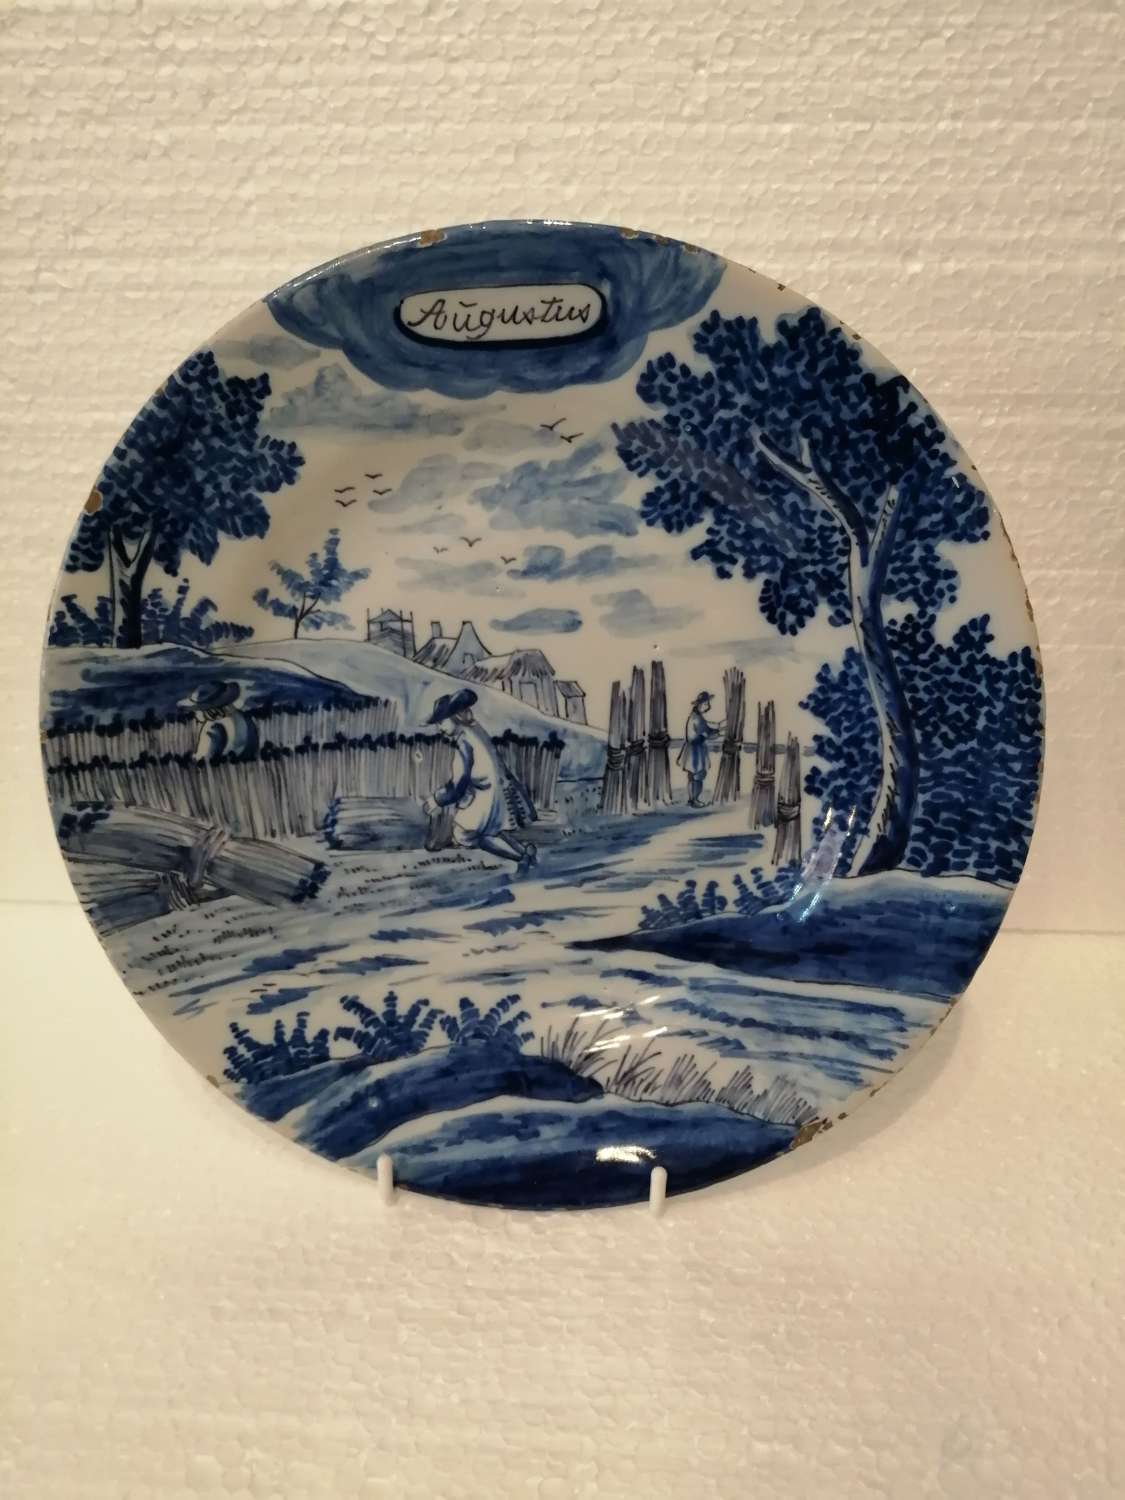 An 18th century Dutch Delft blue & white plate: August